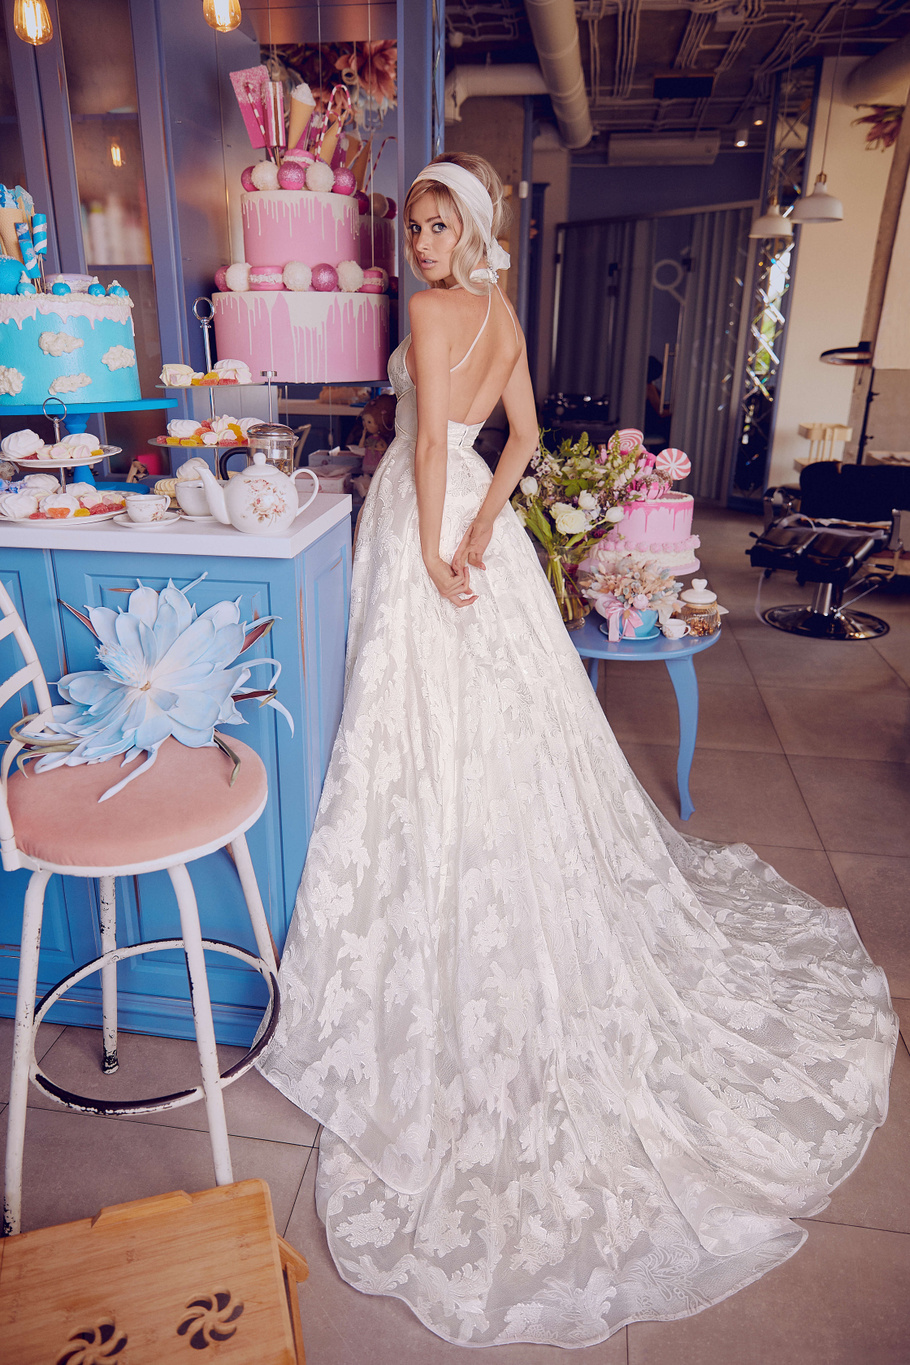 Купить свадебное платье «Монро» Бламмо Биамо из коллекции Свит Лайф 2021 года в Екатеринбурге